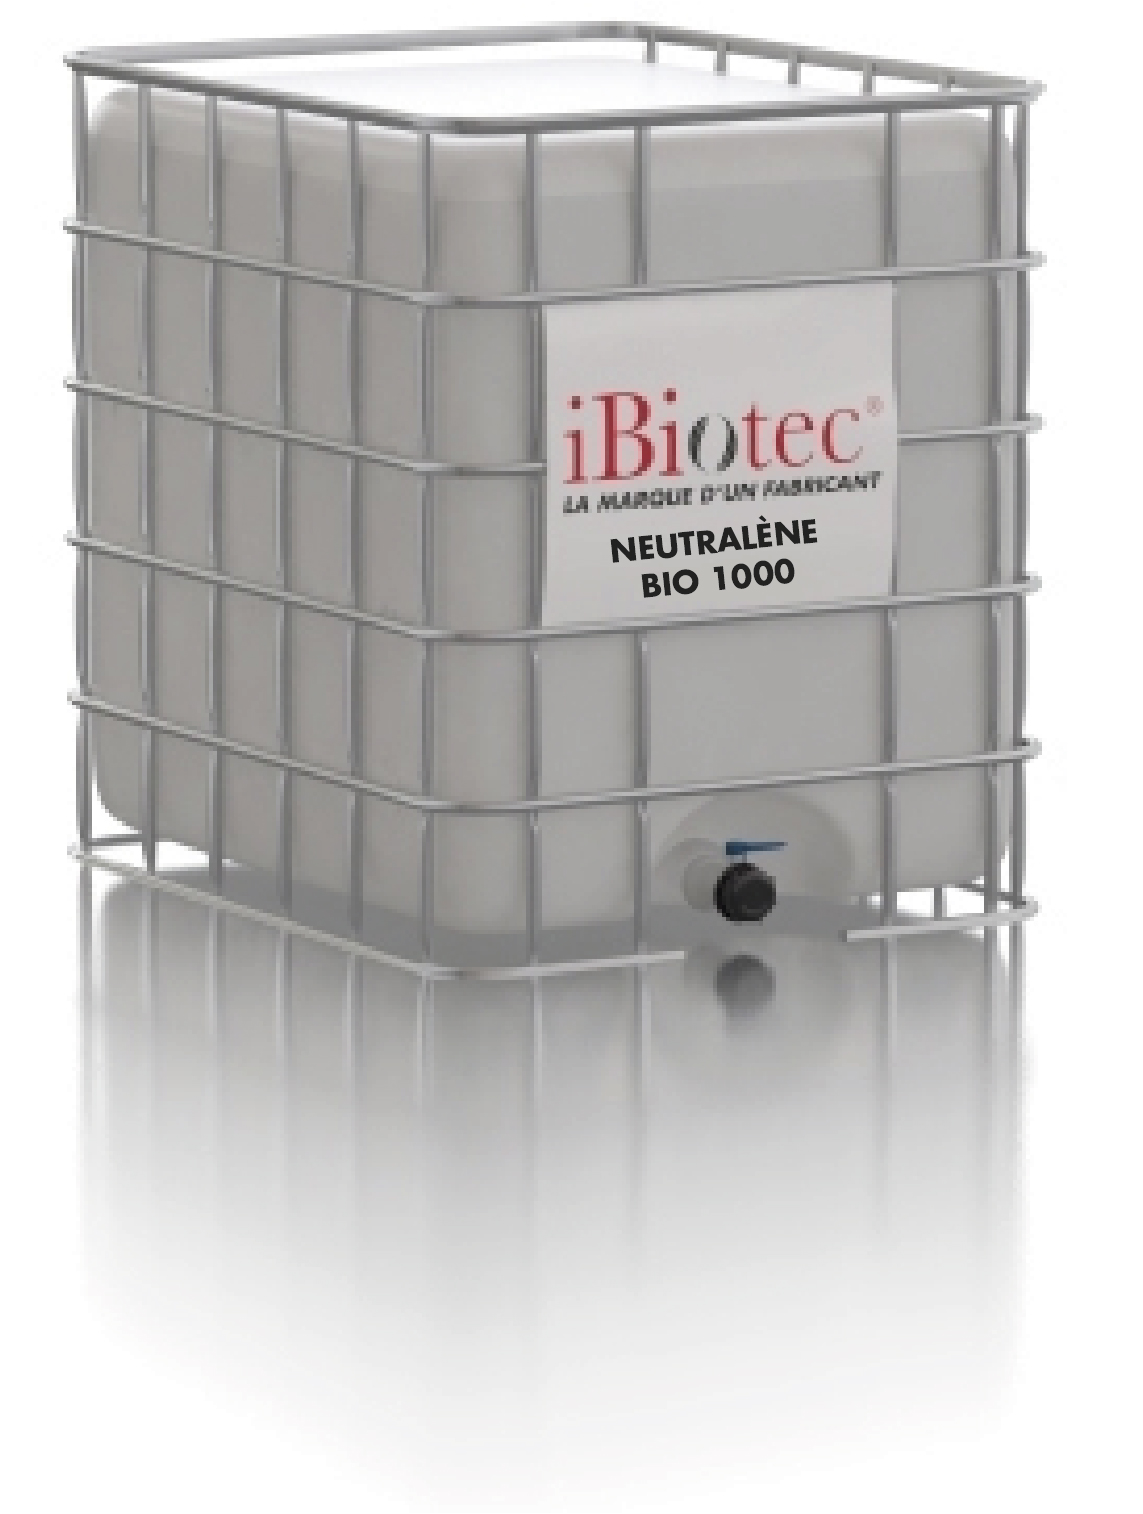 Yağ çözücü solvent, temizleyici, yanıcı olarak sınıflandırılmamıştır, ATEX bölgelerinin eski sürüme geçirilmesi. VOC içermez, PGS optimizasyonu (IED Yönetmeliği). Biyobozunur OECD NSF K1 onaylıdır. Yağ giderme fıskiyeleriyle yüksek dekantasyon kapasitesi Tamir ve tespit edilebilir mobil DETCT BLUE® ekipmanları. HACCP BRC8 IFS. Yanıcı olmayan yağ giderme güvenlik çözücüsü. VOC İÇERMEZ. NSF Sertifikası. özel yağ çözme fıskiyeleri. Sıcakta ve yıkama makinelerinde kullanılabilir, dielektrik. Yağ çözücü temizleme fıskiyesi, Endüstriyel yağ çözücü solvent üreticisi, yanıcı olmayan yağ çözücü solvent. Biyo bozunur yağ çözücü, güvenlik yağ çözücüsü, gıda ile temas eden yağ çözücü, fıskiye solventi, biyo bozunur çözücü, güvenlik çözücüsü, gıda ile temas eden çözücü, yağ çözücü solvent, SOLVENTLER, voc içermeyen yağ çözücü solvent, voc içermeyen yağ çözücü solvent, temizlik fıskiyesi çözücü, solvent fıskiyesi yağ çözücü, dielektrik solvent. Endüstriyel çözücü üreticileri, endüstriyel çözücü tedarikçileri. Endüstriyel çözücüler. Yanıcı olmayan solvent. NSF çözücü belgesi. Gıda için endüstriyel çözücü. Sıcakta kullanılabilir çözücü. voc içermeyen çözücü Fıskiye çözücü. Yağ giderici fıskiye çözücü. Yeni çözücüler. Yeni çözücü. Yağ giderici fıskiye çözücü. Diklorometan yerine geçer. Metilen klorür yerine geçer. ch2 cl2 yerine geçer. CMR yerine geçer. Aseton yerine geçer. Aseton yerine geçer. NMP yerine geçer. Poliüretanlar için çözücü. Epoksi için çözücüler. Polyester çözücü. Yapışkan çözücü. Boya çözücü. Reçine çözücü. Vernik çözücü. Elastomerik çözücüler. Endüstriyel bakım ürünü